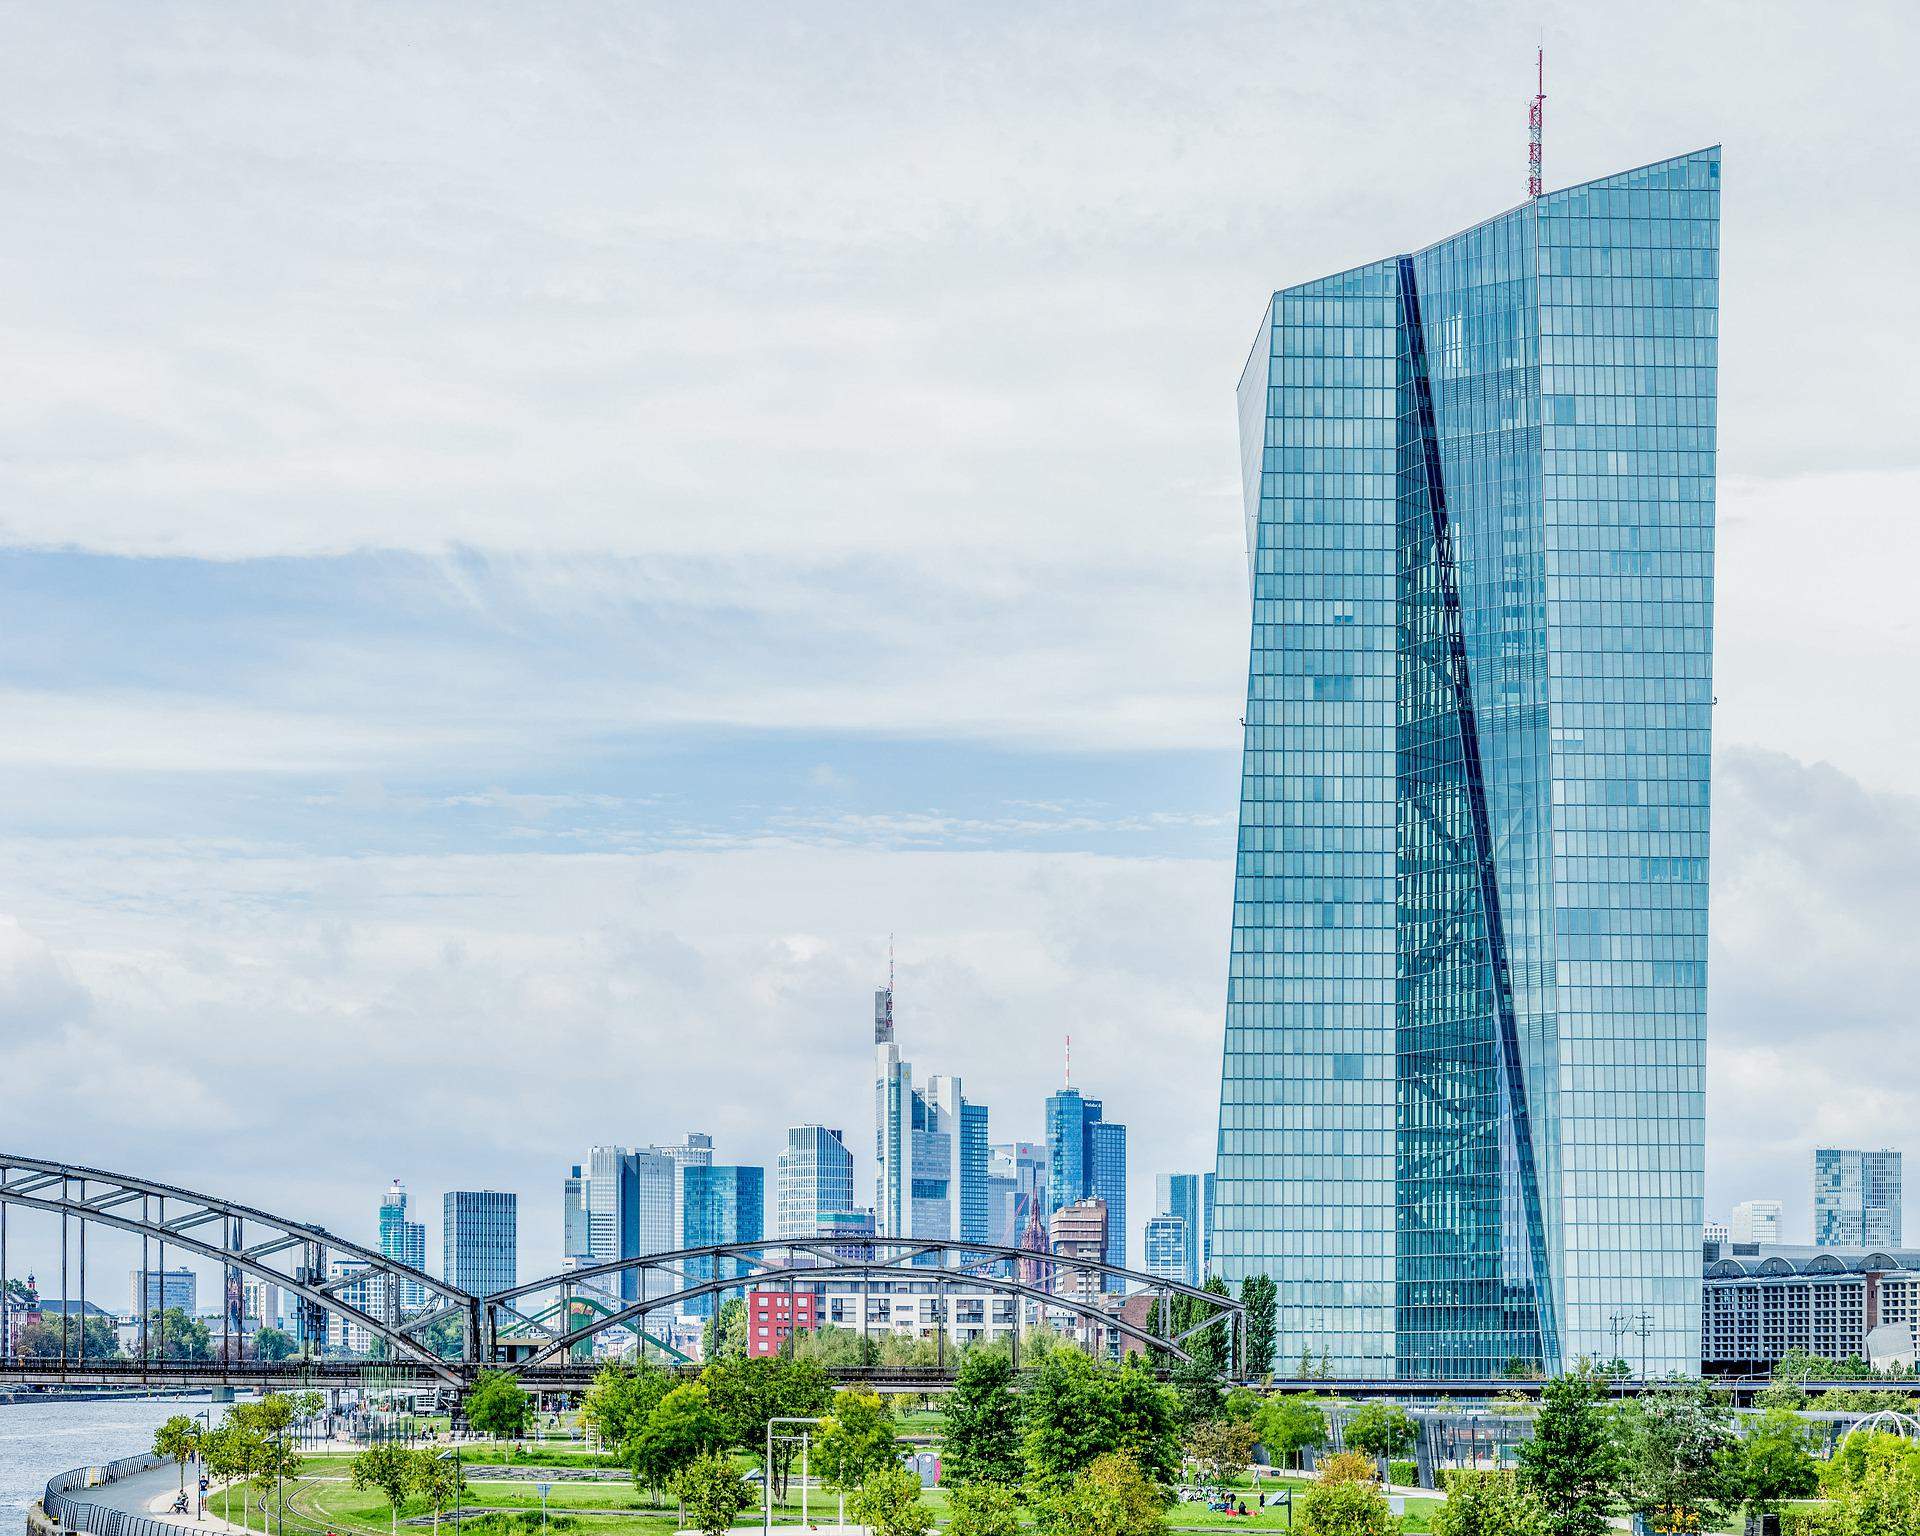 La Classifica delle Banche Europee più solide secondo i criteri della BCE